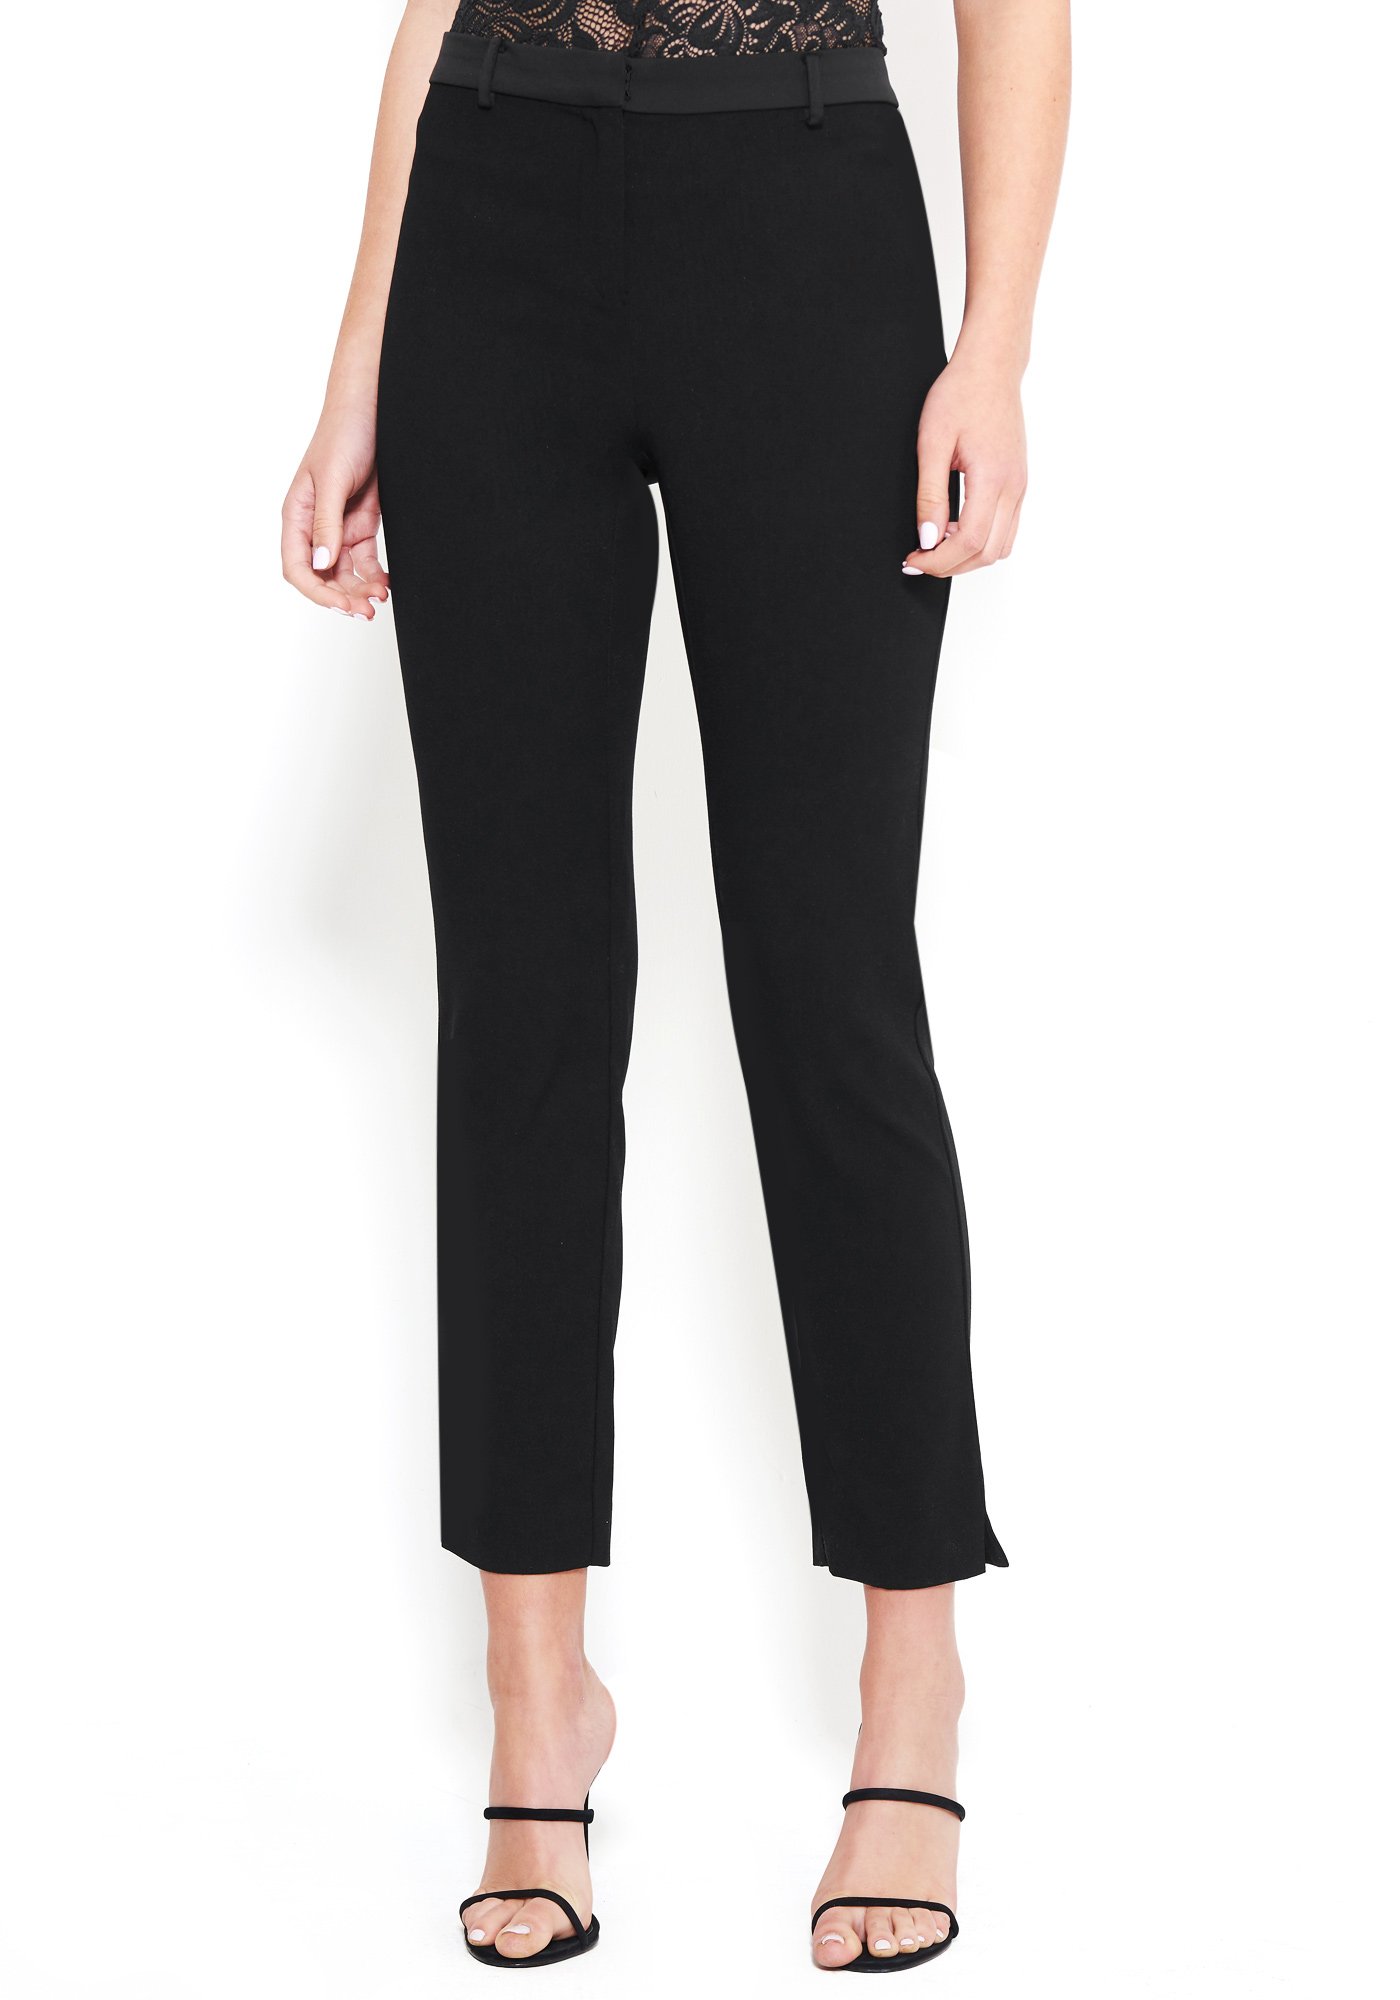 Bebe Women's Tara Crepe Pant, Size 2 in Black Polyester